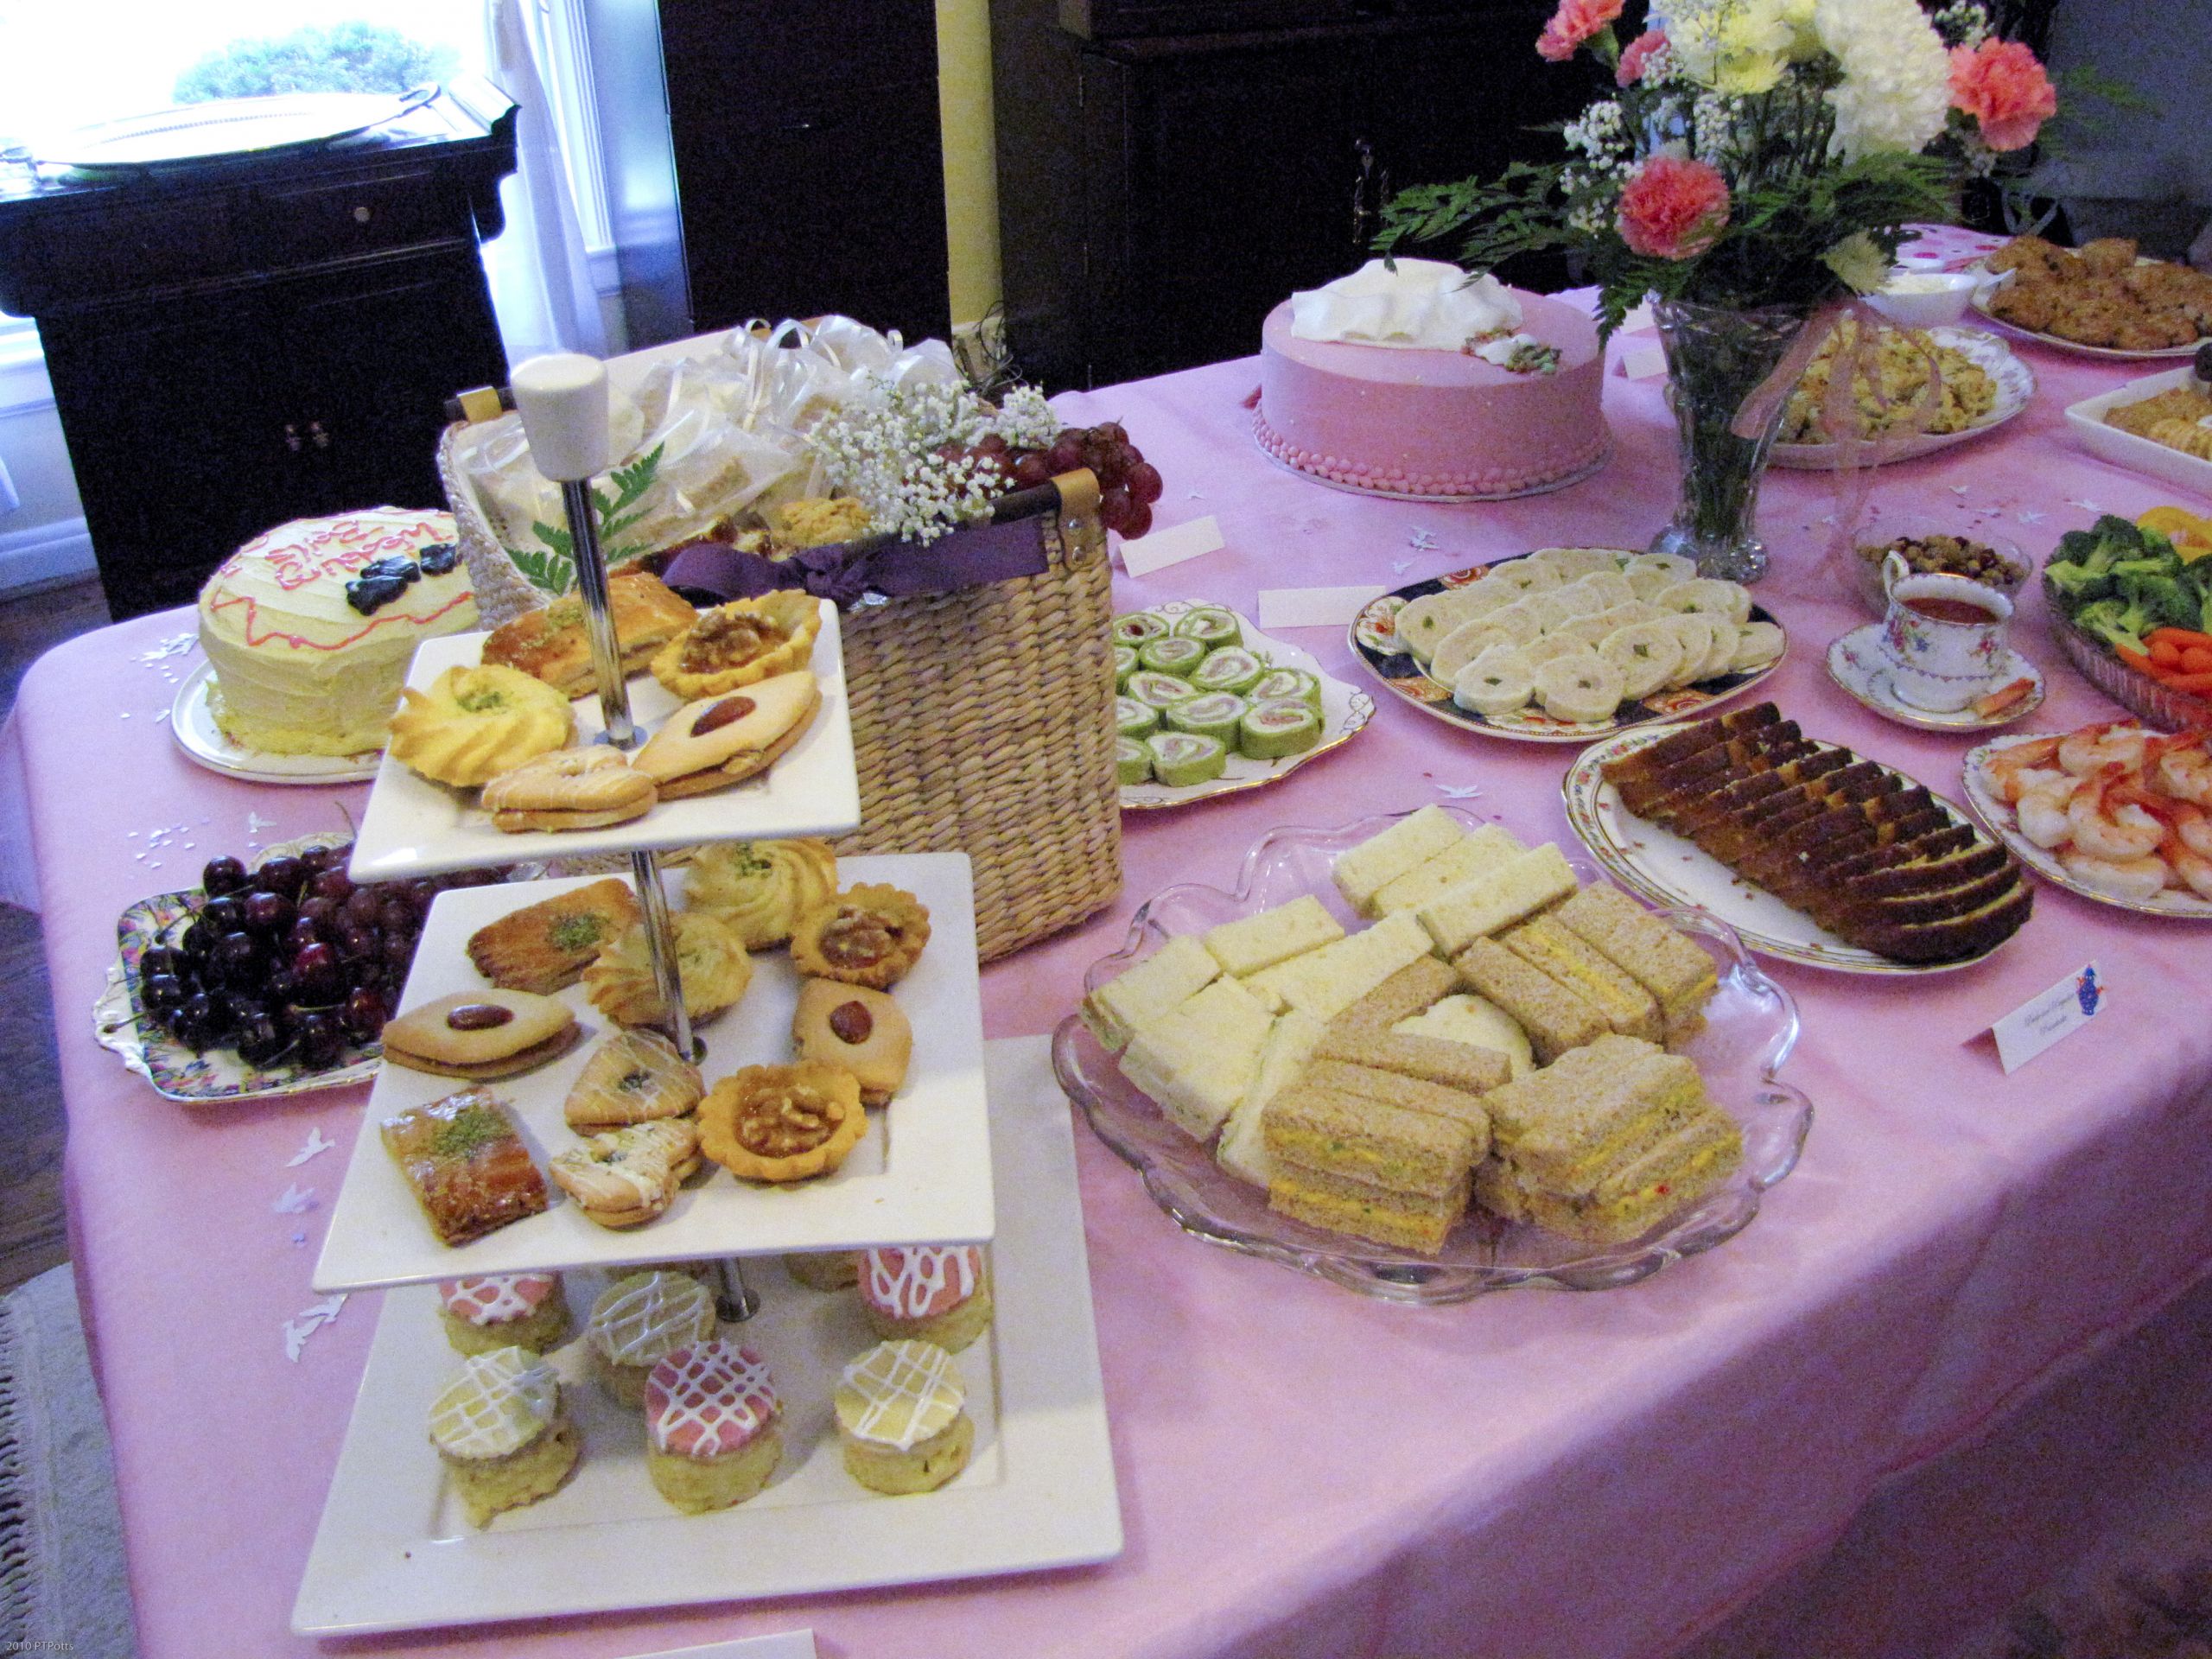 Party Tea Food Ideas
 A Jane Austen Tea Party Bridal Shower